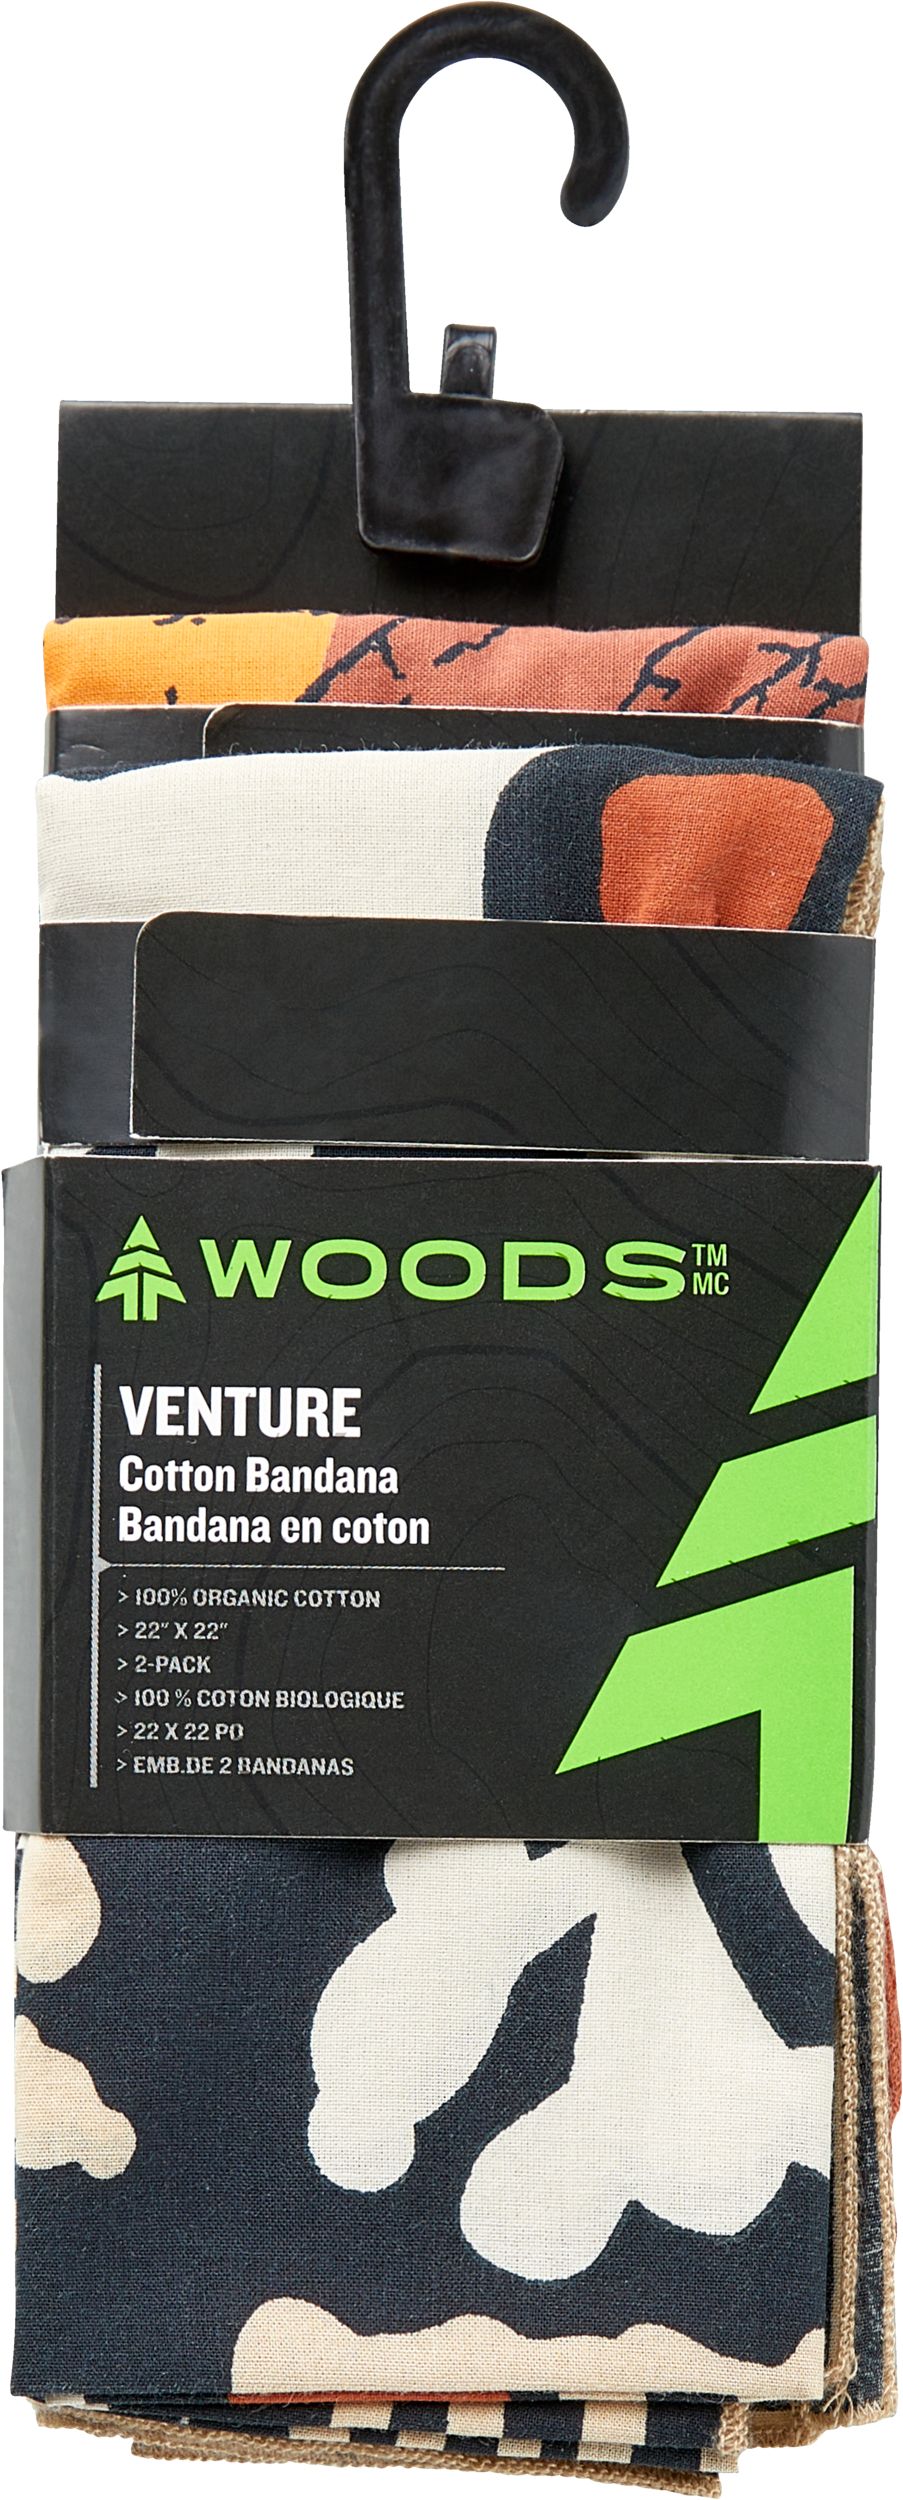 Image of Woods Unisex Venture Cotton Bandana - 2 Pack